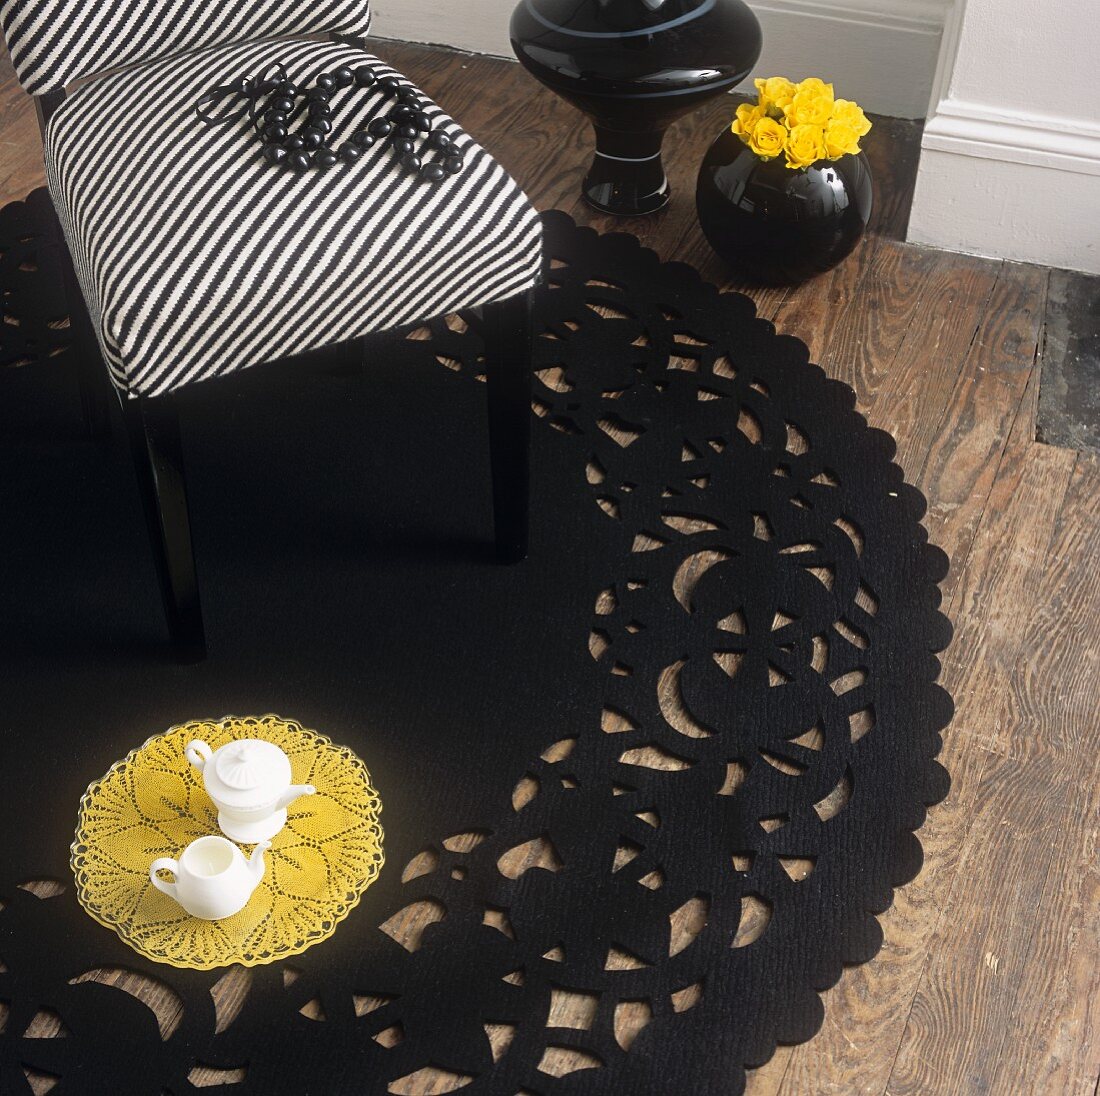 Stuhl mit gestreiftem Bezug auf einem runden schwarzen Teppich